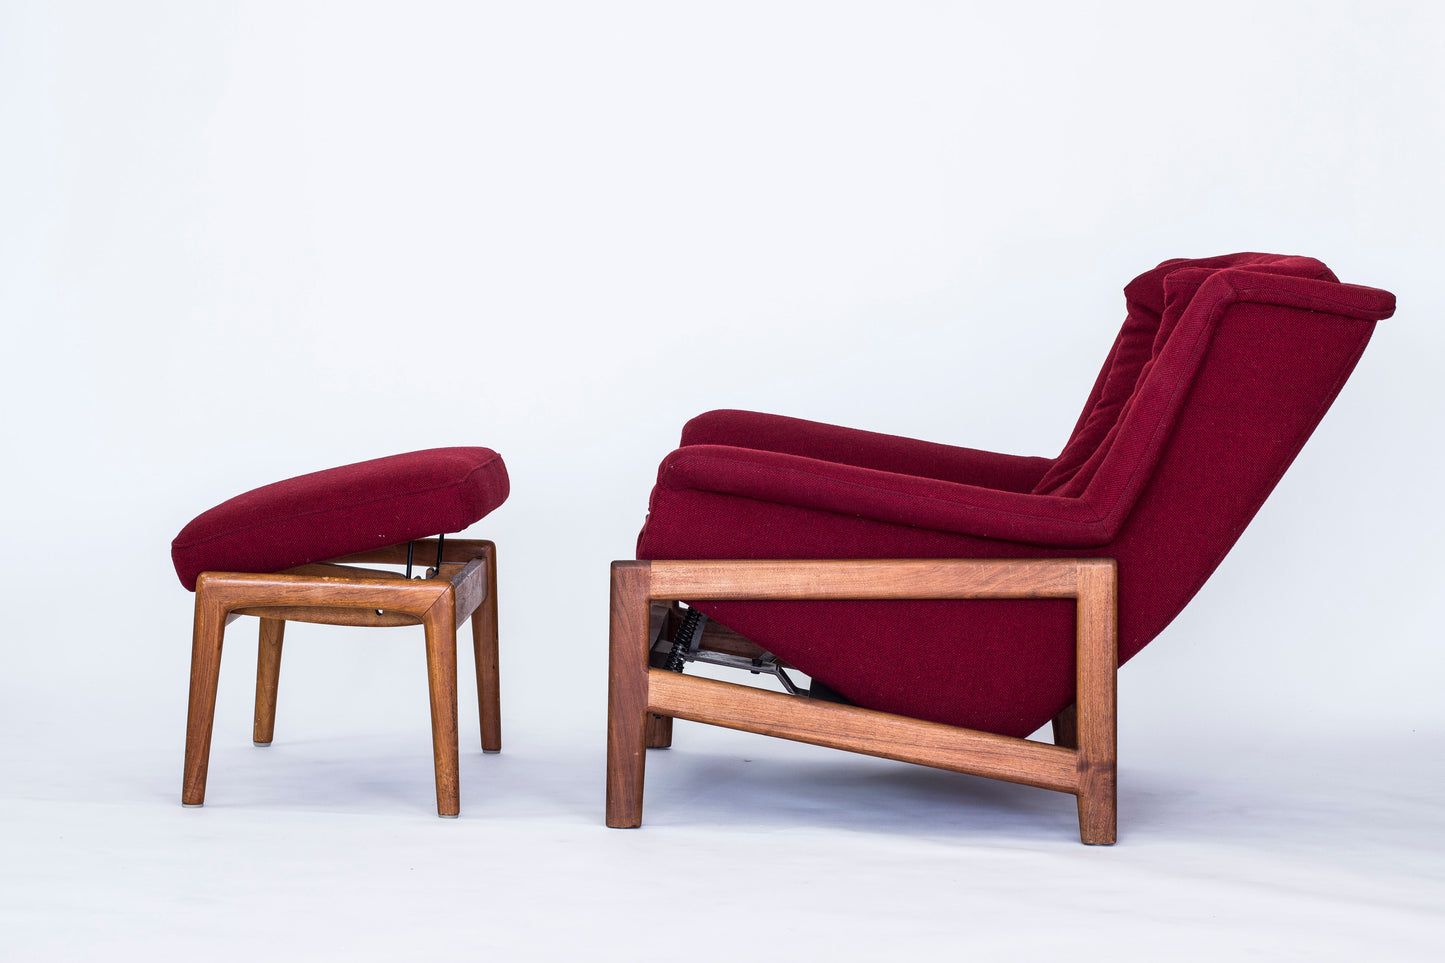 Fåtölj och fotpall Profil av Folke Ohlsson för DUX. Nyklädd! Ställbar lutning på fåtölj och fotpall. H: 90cm, B: 87cm, D: 97cm. Lounge chair and foot stool by Folke Ohlsson for DUX. New fabric! Adjustable angle on chair and stool. H: 90cm/35,4", W: 87cm/34,3", D: 97cm/38,2".